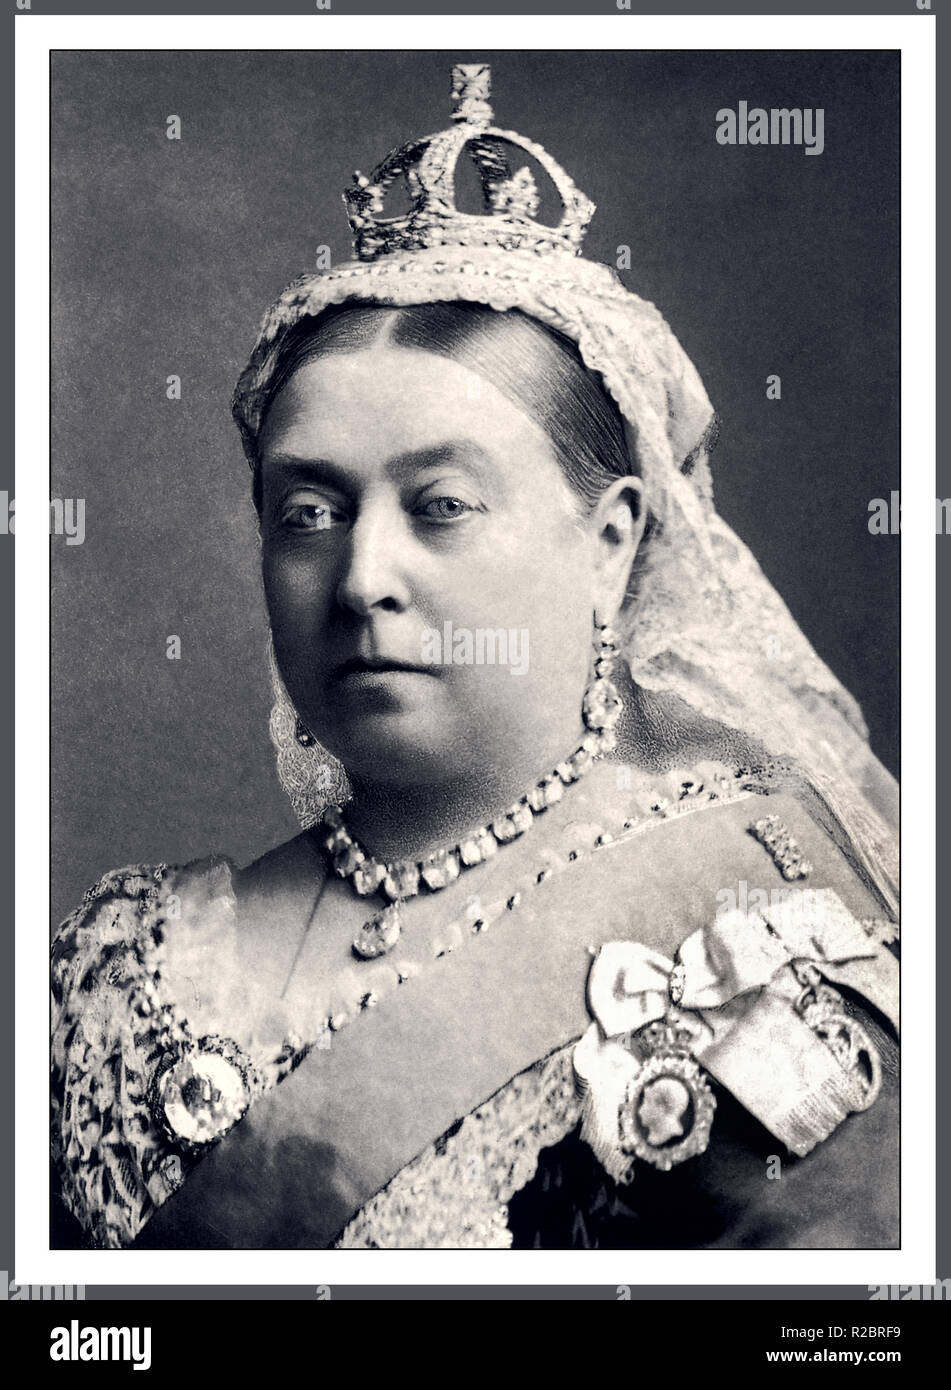 La reine Victoria 1887 monarque britannique studio portrait officiel portant le collier et boucles d'couronnement, petit-Couronne de diamants et de Koh-i-noor la petite broche couronne de diamants de la reine Victoria est une miniature de la couronne impériale et de l'état faite à la demande de la reine Victoria en 1870 pour porter sur son cap de veuve à la suite du décès de son mari, le Prince Albert. C'était peut-être l'état le plus associé avec la reine et est un des joyaux de la Couronne sur l'affichage public dans la Jewel House à la Tour de Londres. Photographe/Bassano Banque D'Images